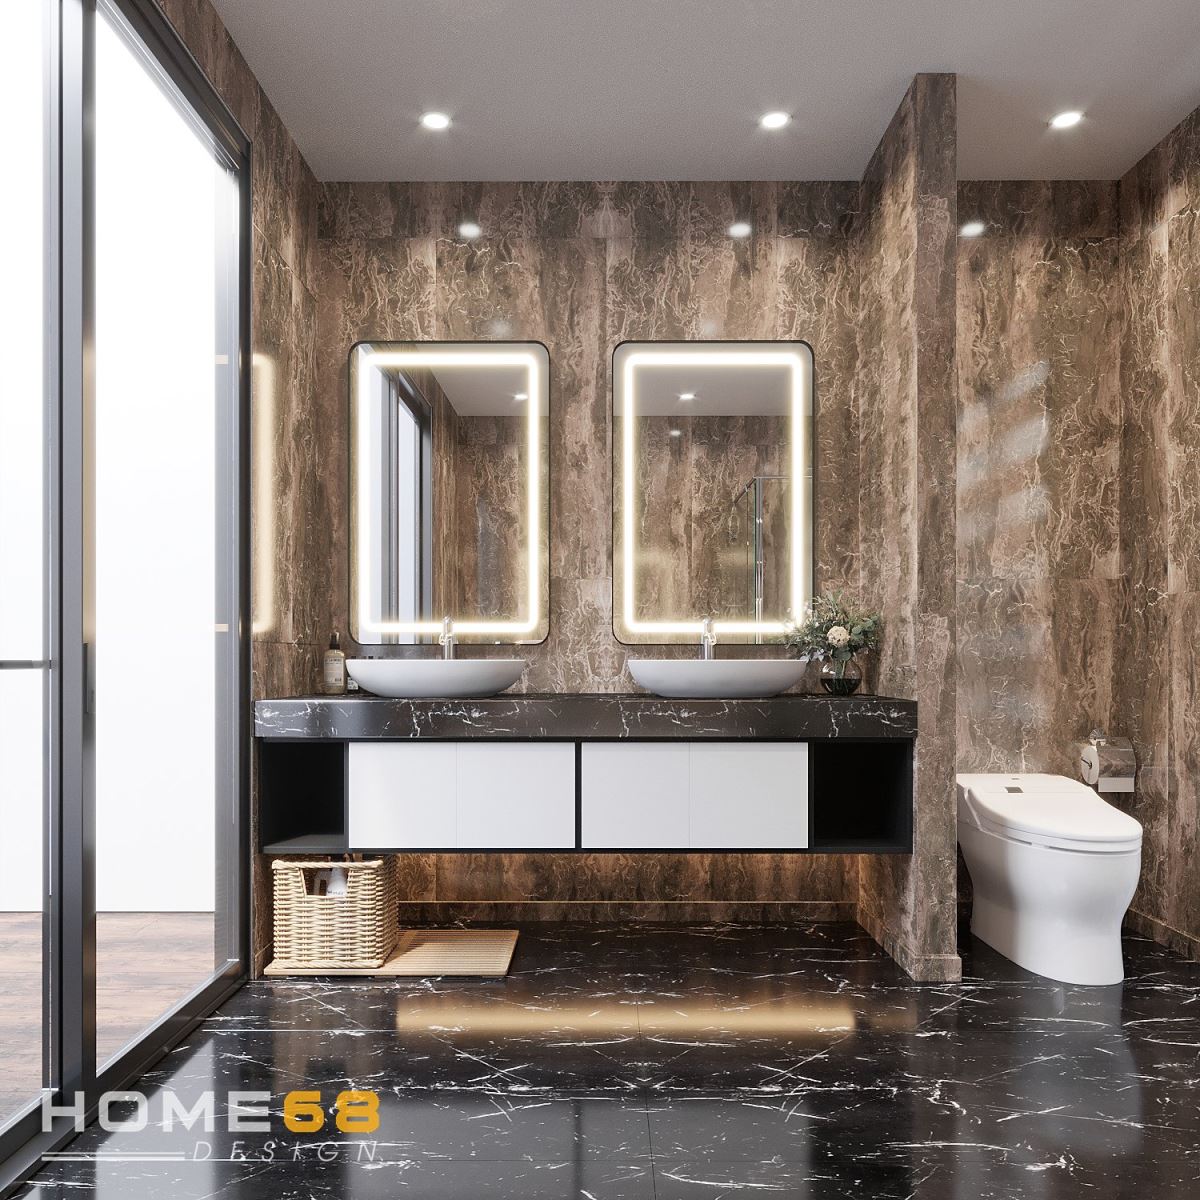 Thiết kế nội thất nhà vệ sinh hiện đại, tiện nghi- HOME68